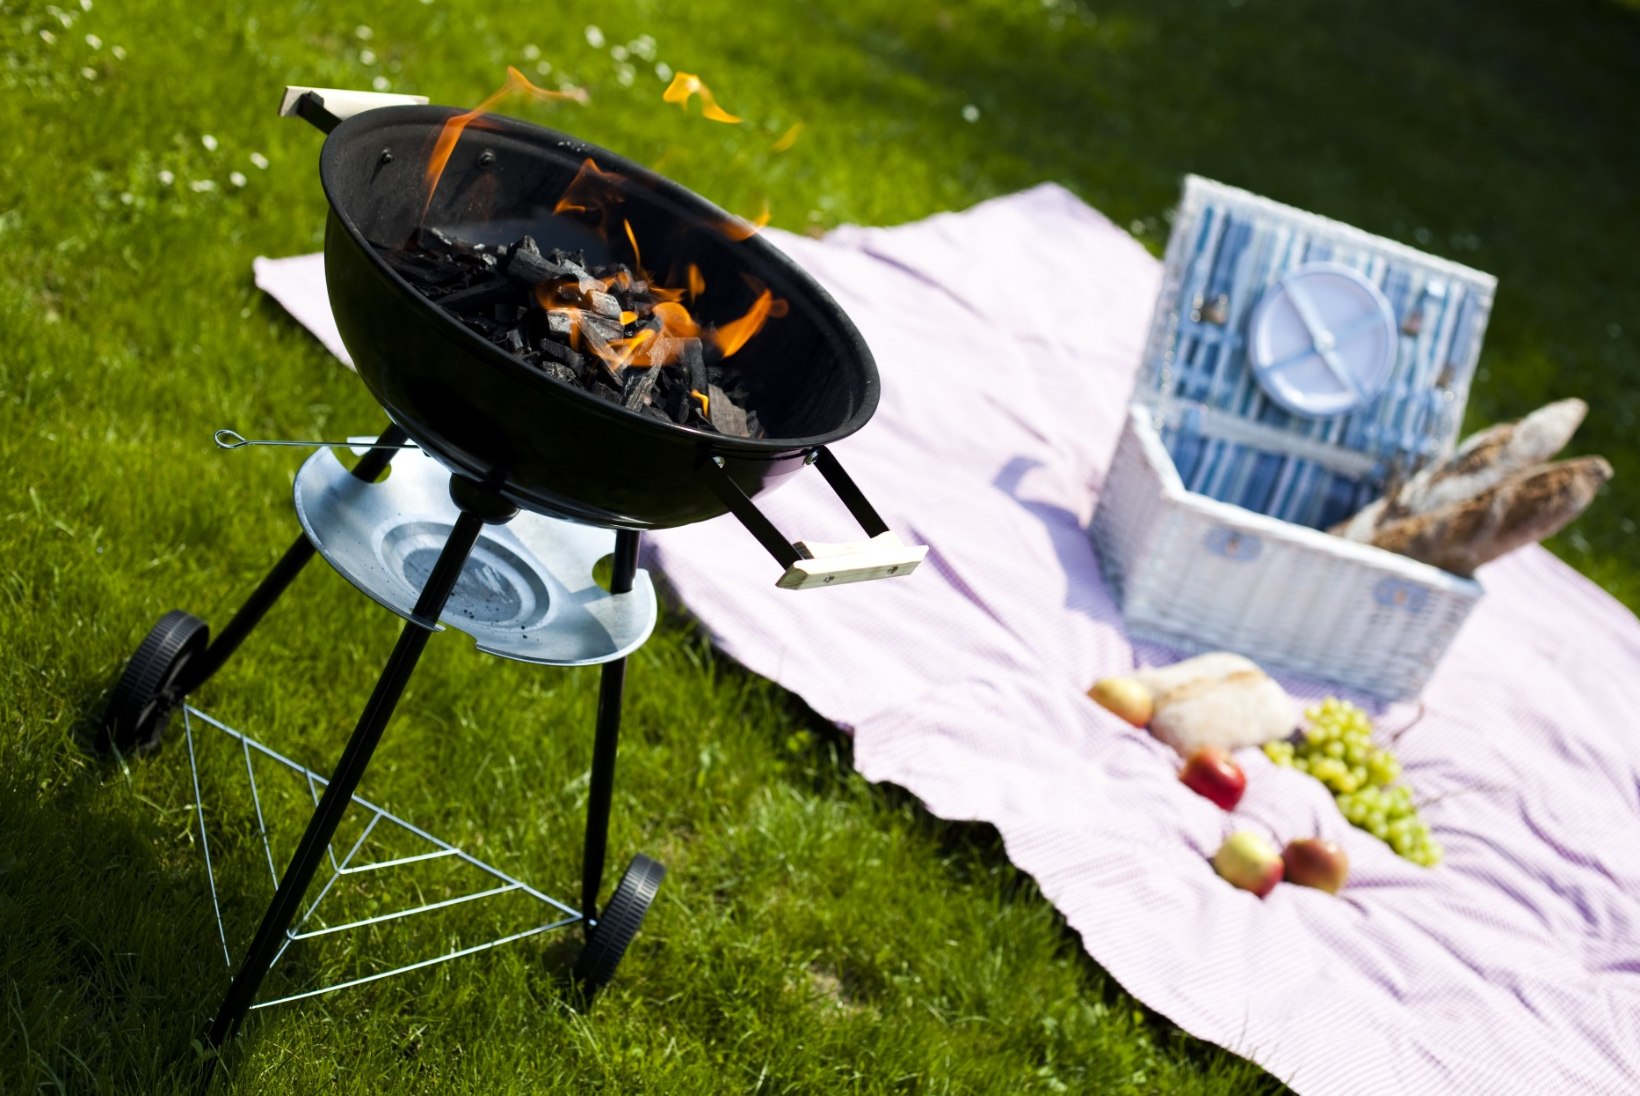 NÄDALAMENÜÜ | 29. aprill–5. mai: pikniku- ja grillieri. Sest värskes õhus maitseb toit paremini!